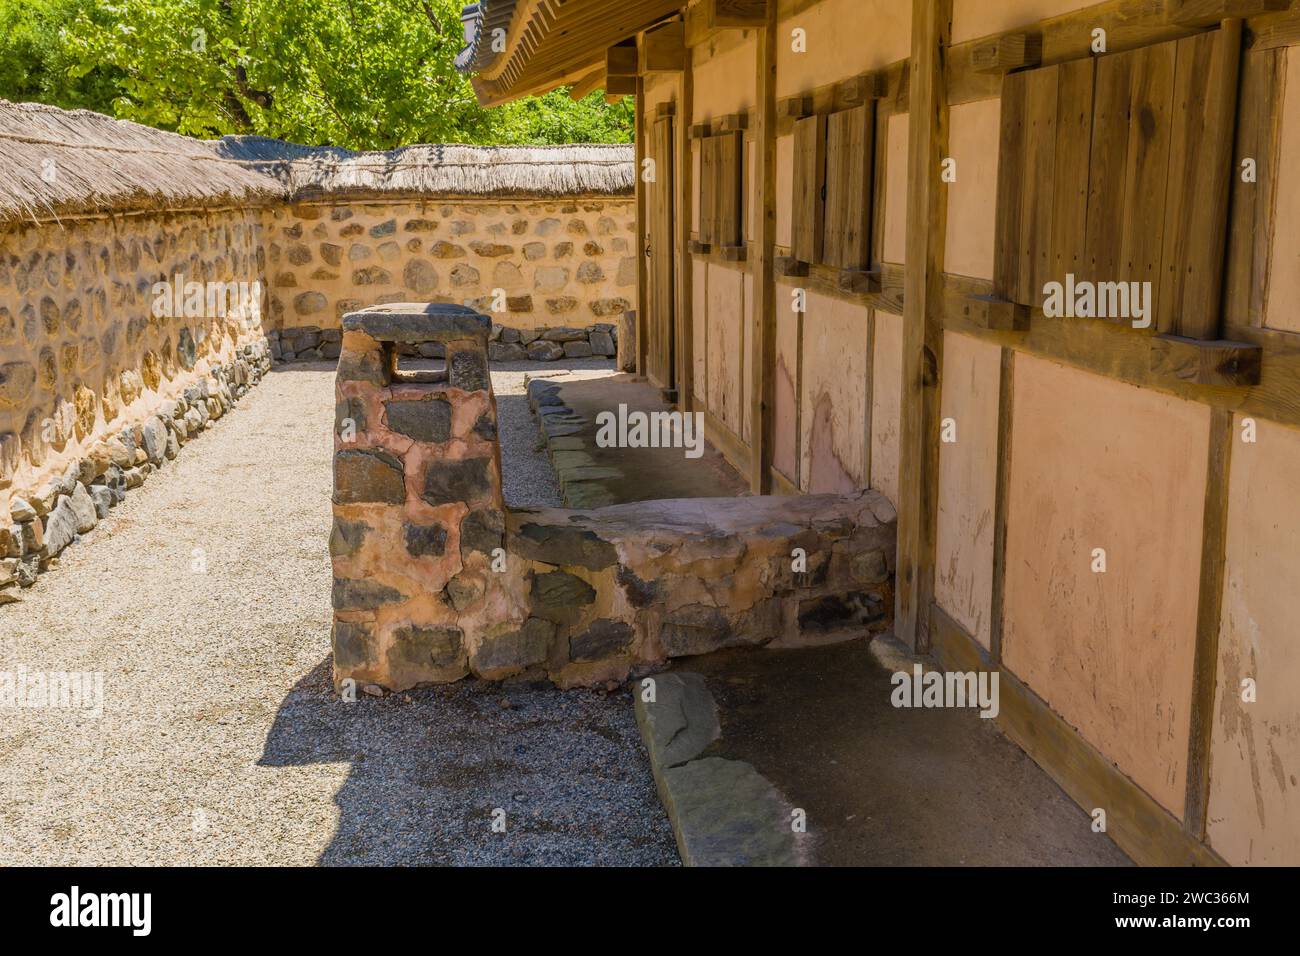 Buyeo, Corea del Sur, 7 de julio de 2018: Chimenea de piedra y barro adosada antigua casa en el pueblo tradicional situado en el parque público en Neungsa Baekje Foto de stock